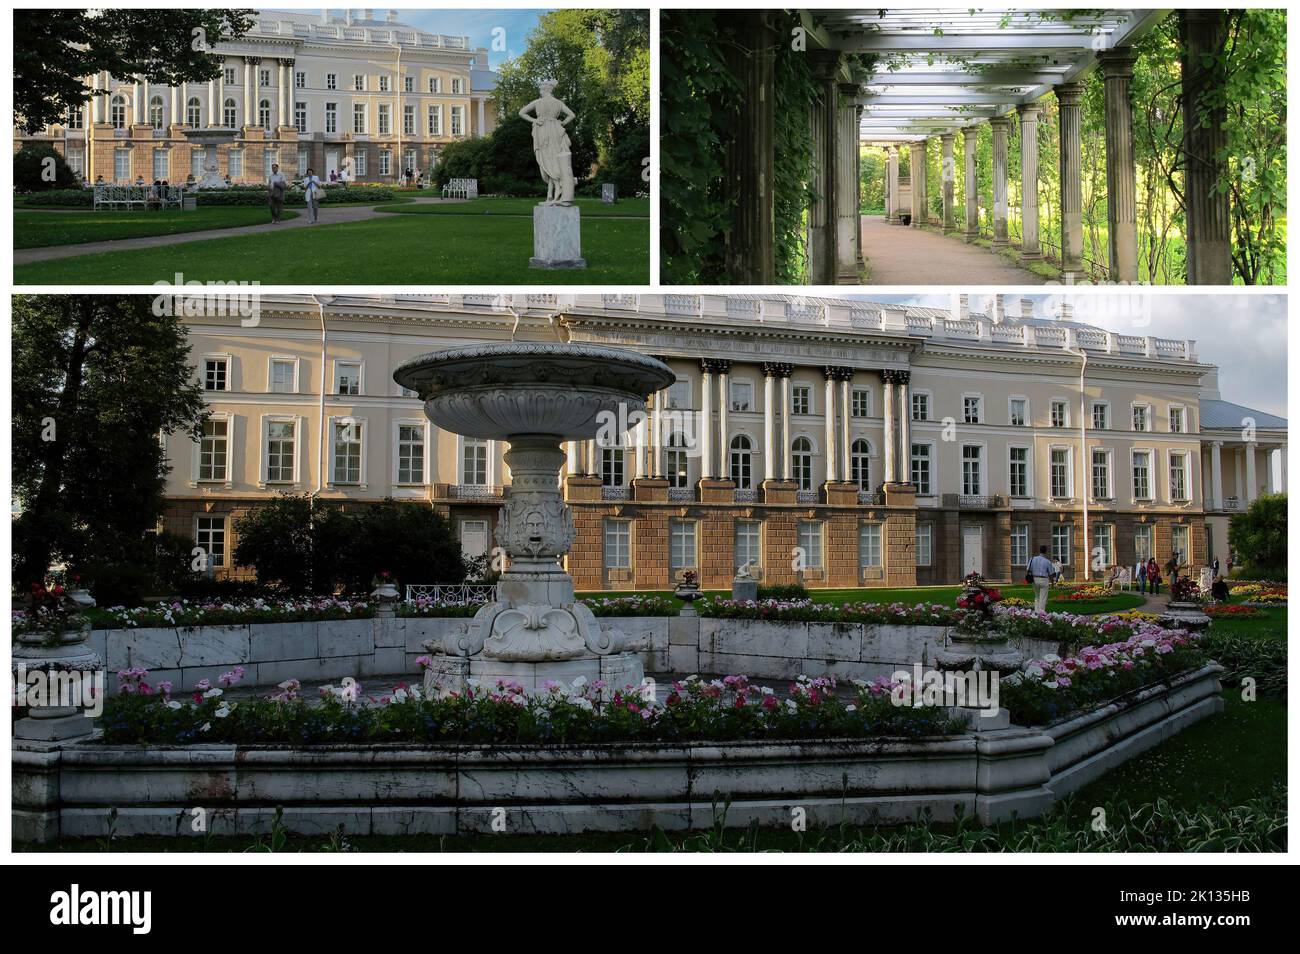 Der schöne Alexander-Palast, im klassischen Stil, in Puschkin (St. Petersburg) wurde von Katharina II. Für ihren Neffen Alexander I., den zukünftigen Kaiser, erbaut Stockfoto